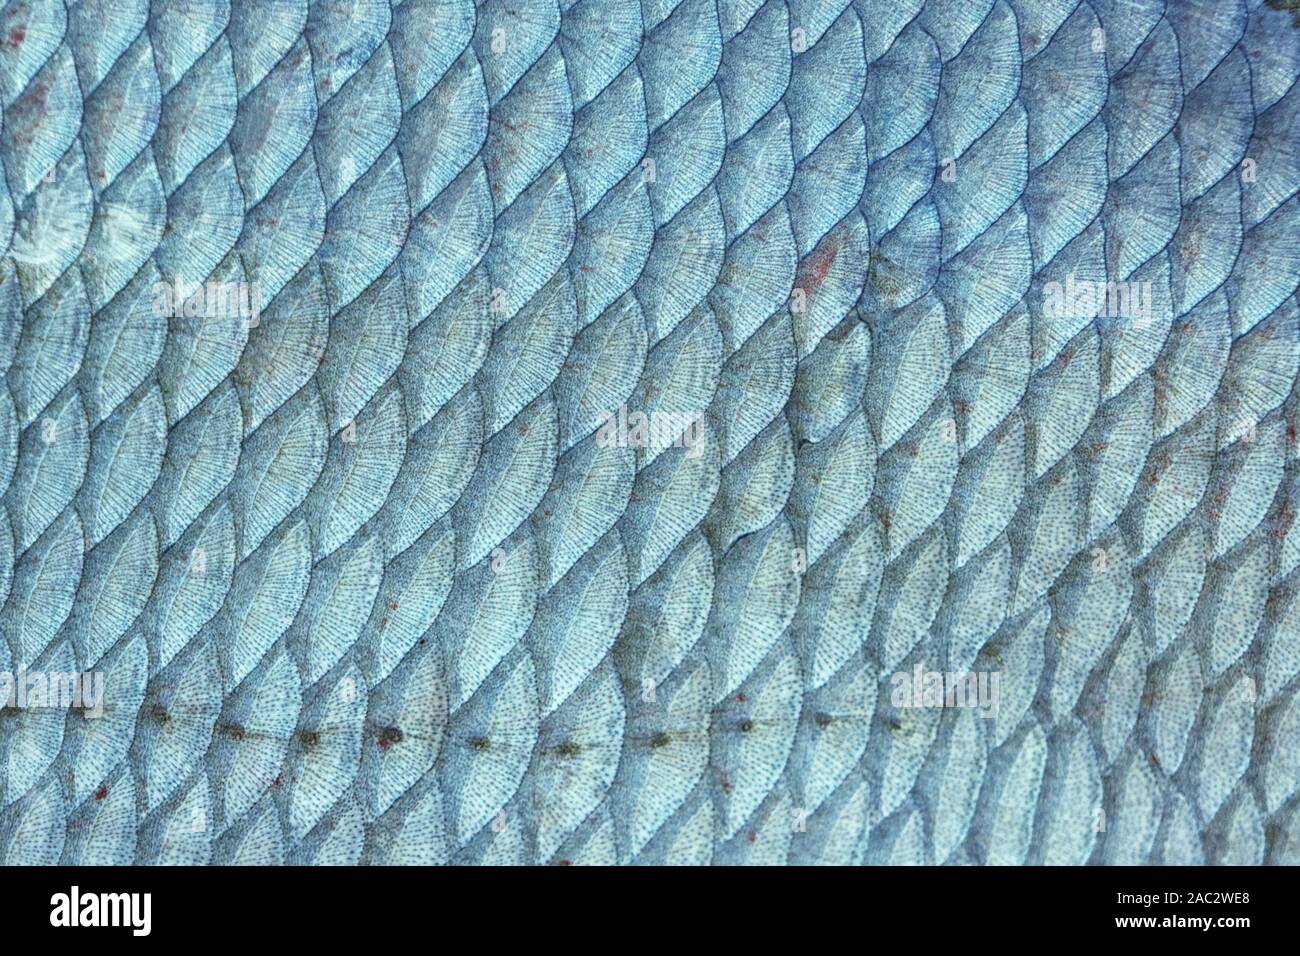 Brassen (abramis Brama) Fischschuppen, natürliche Beschaffenheit, getönten Bild Stockfoto